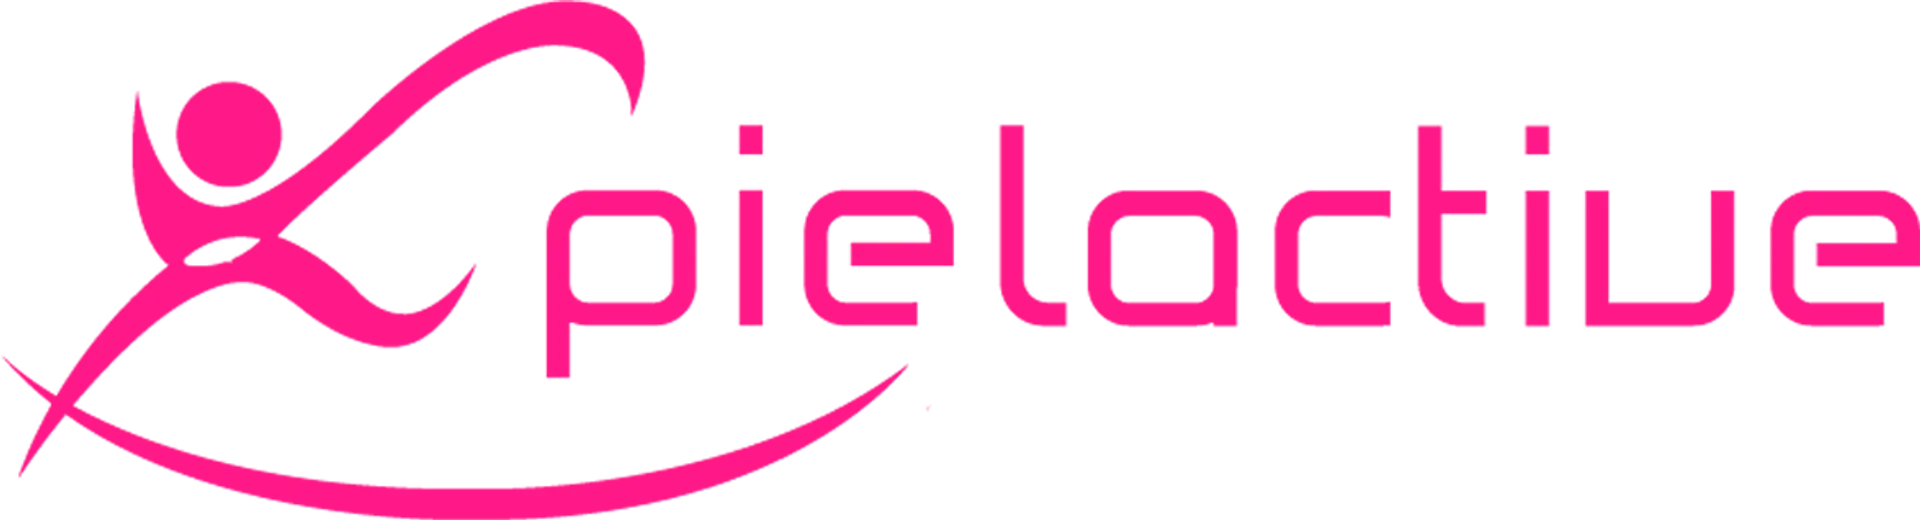 PIELACTIVE logo